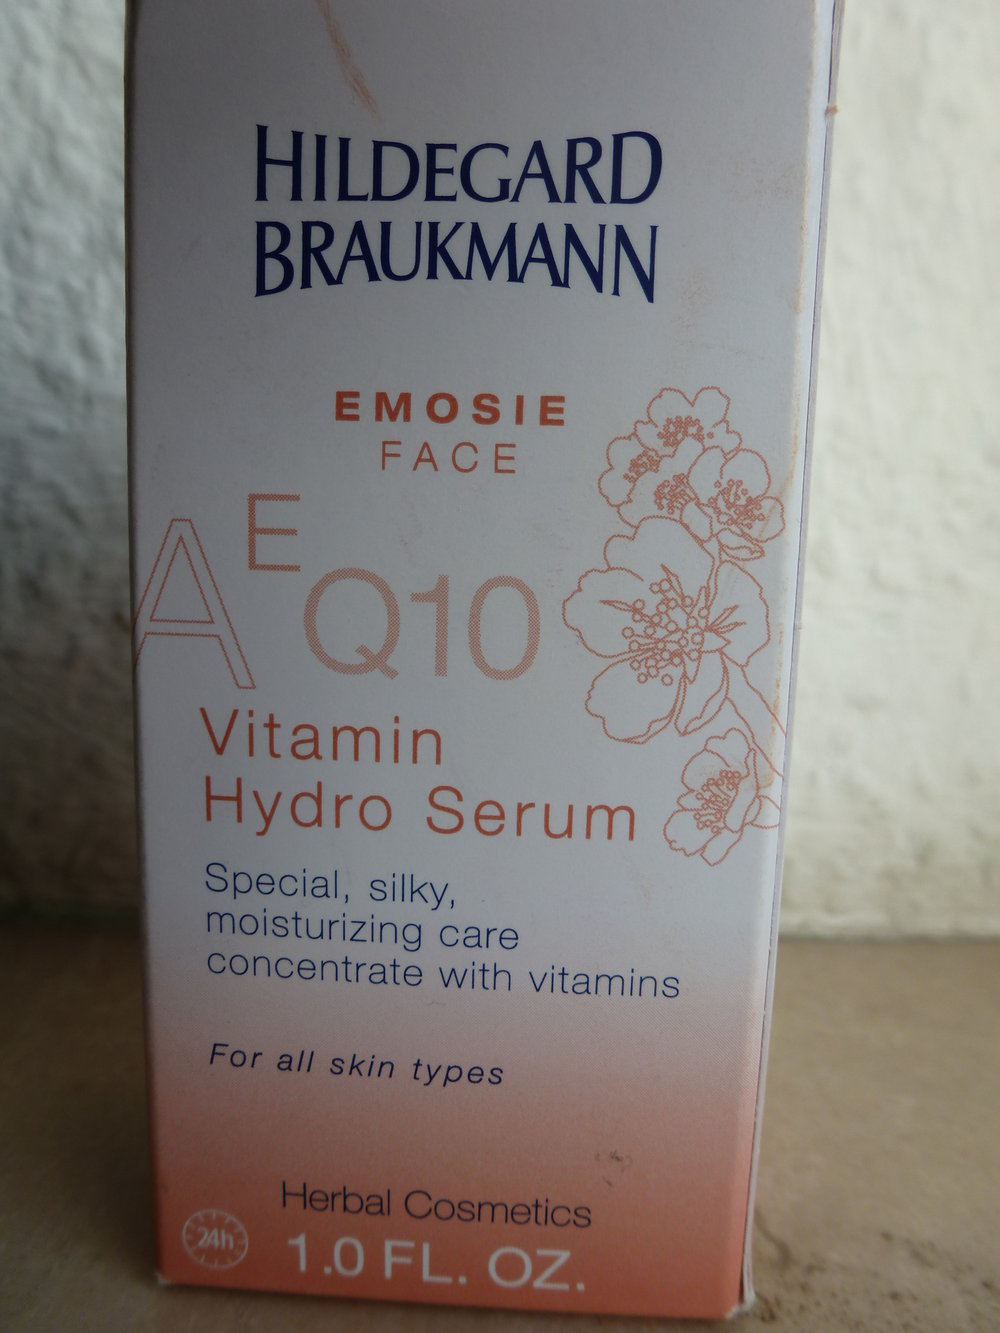 Vitamin Hydro Serum